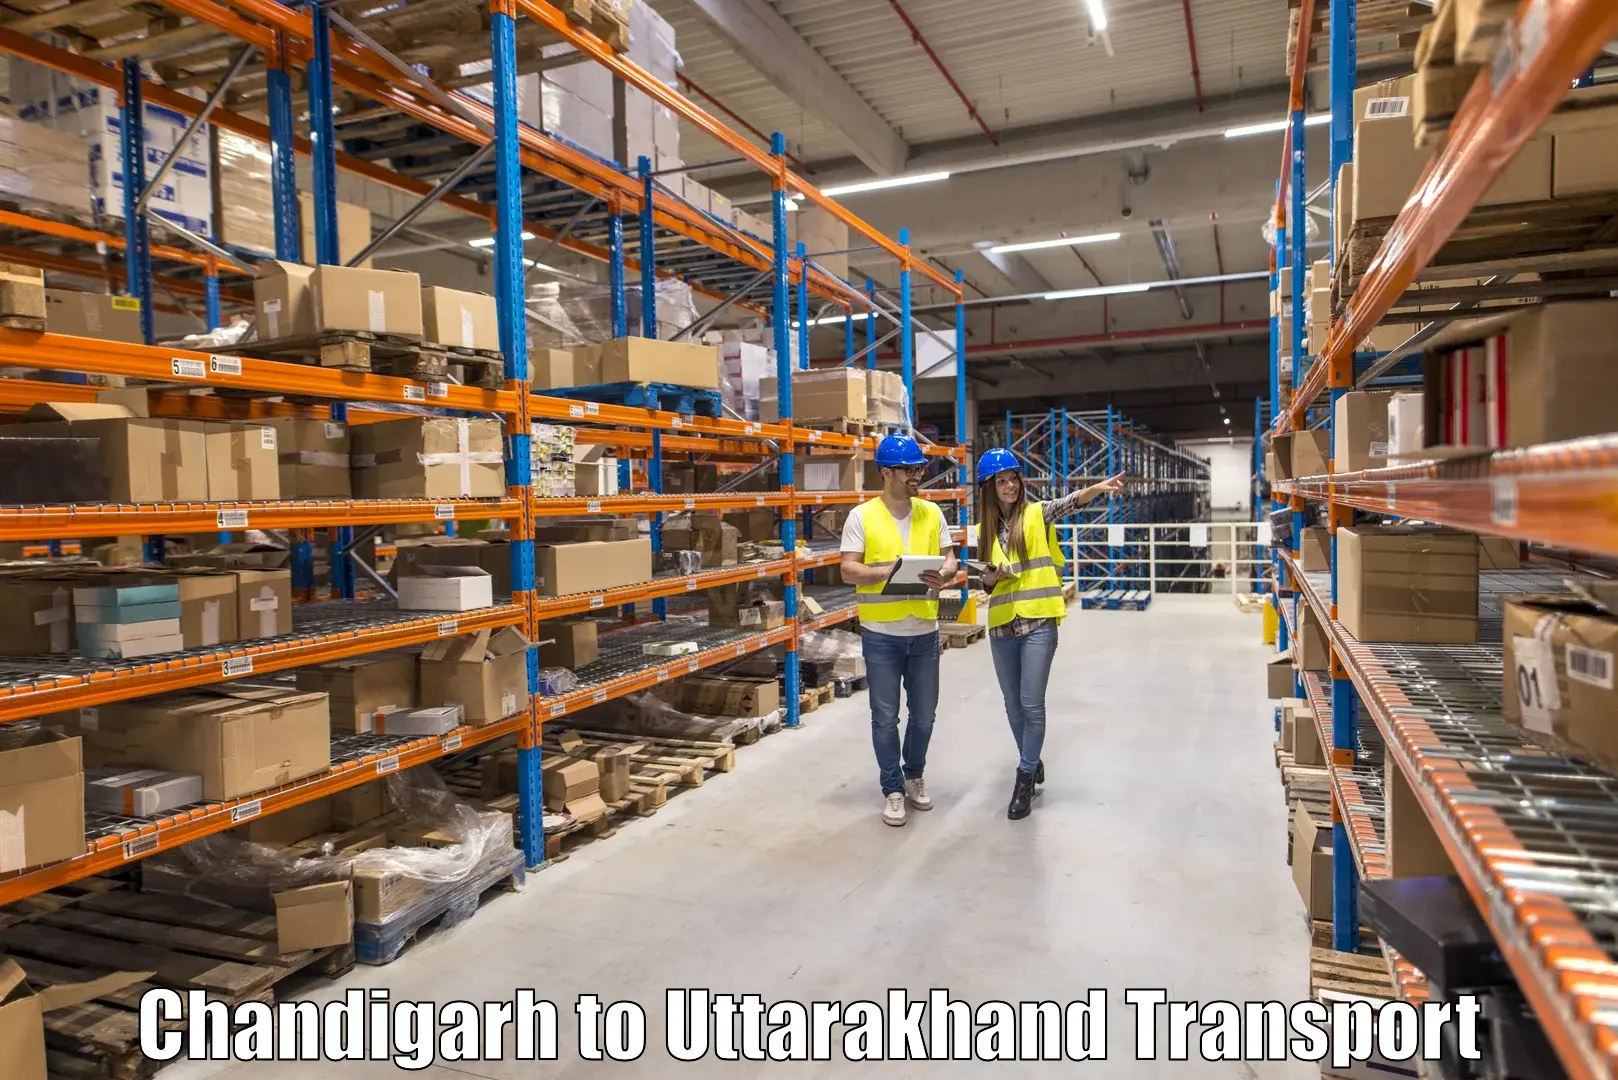 Express transport services Chandigarh to Dehradun